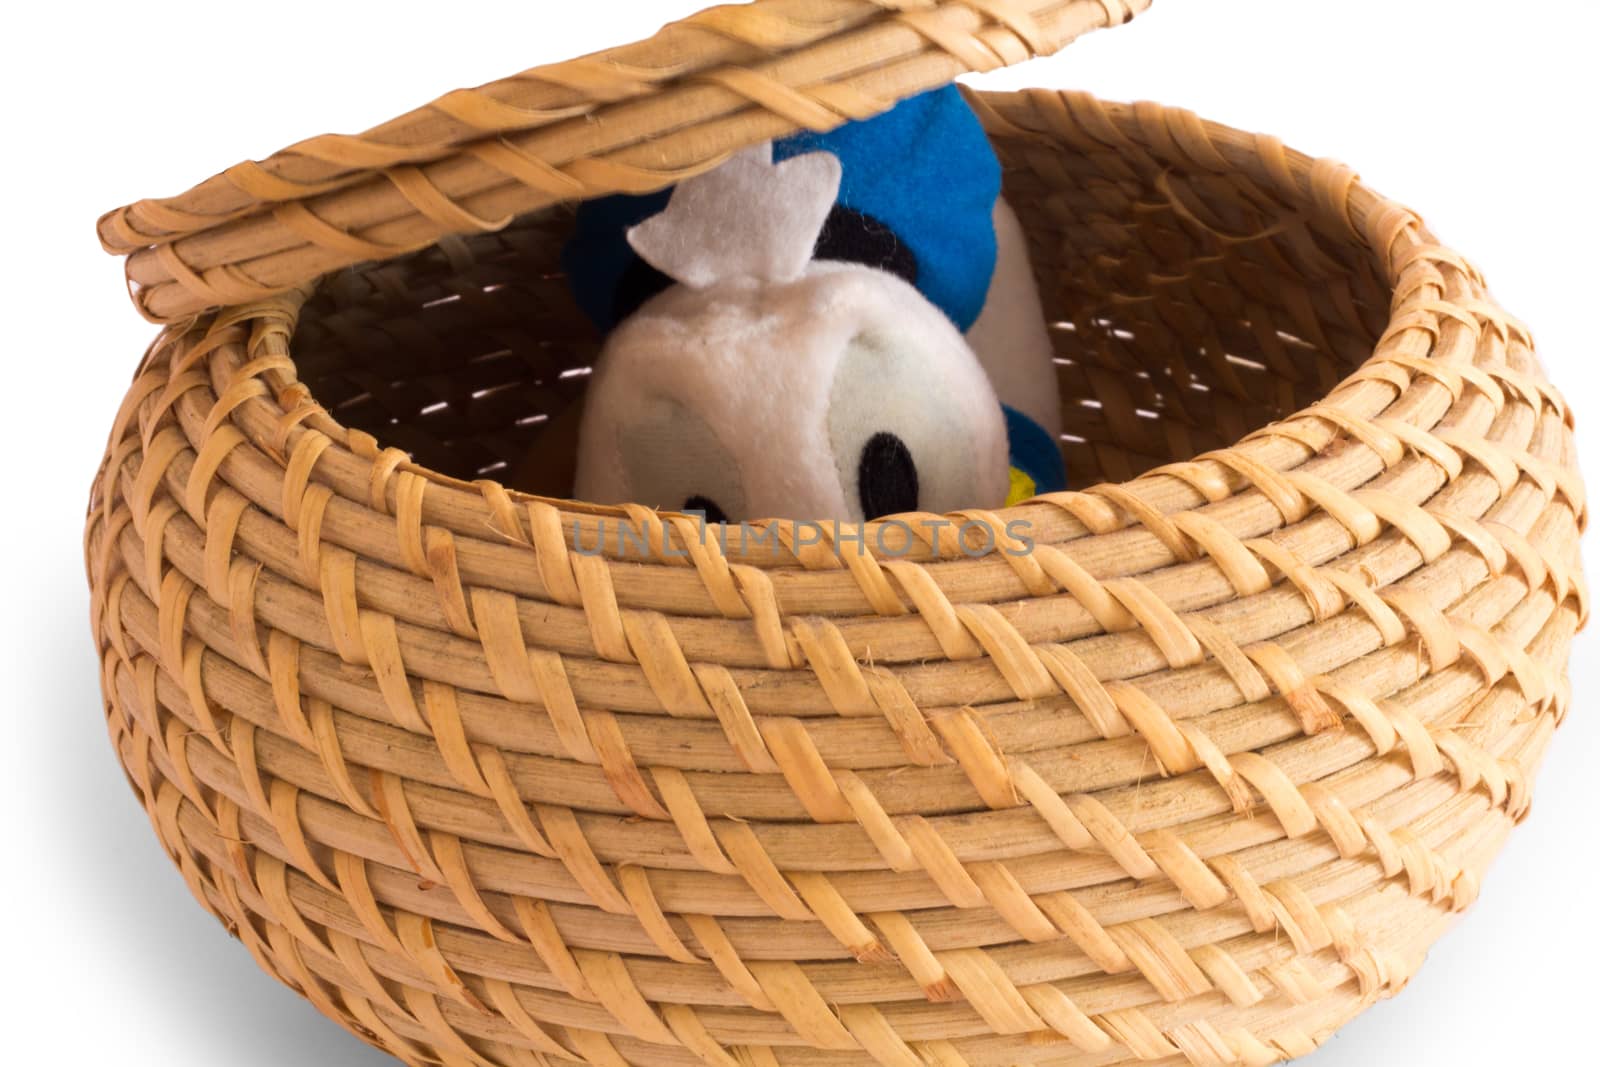 a nice duck hidden in the basket